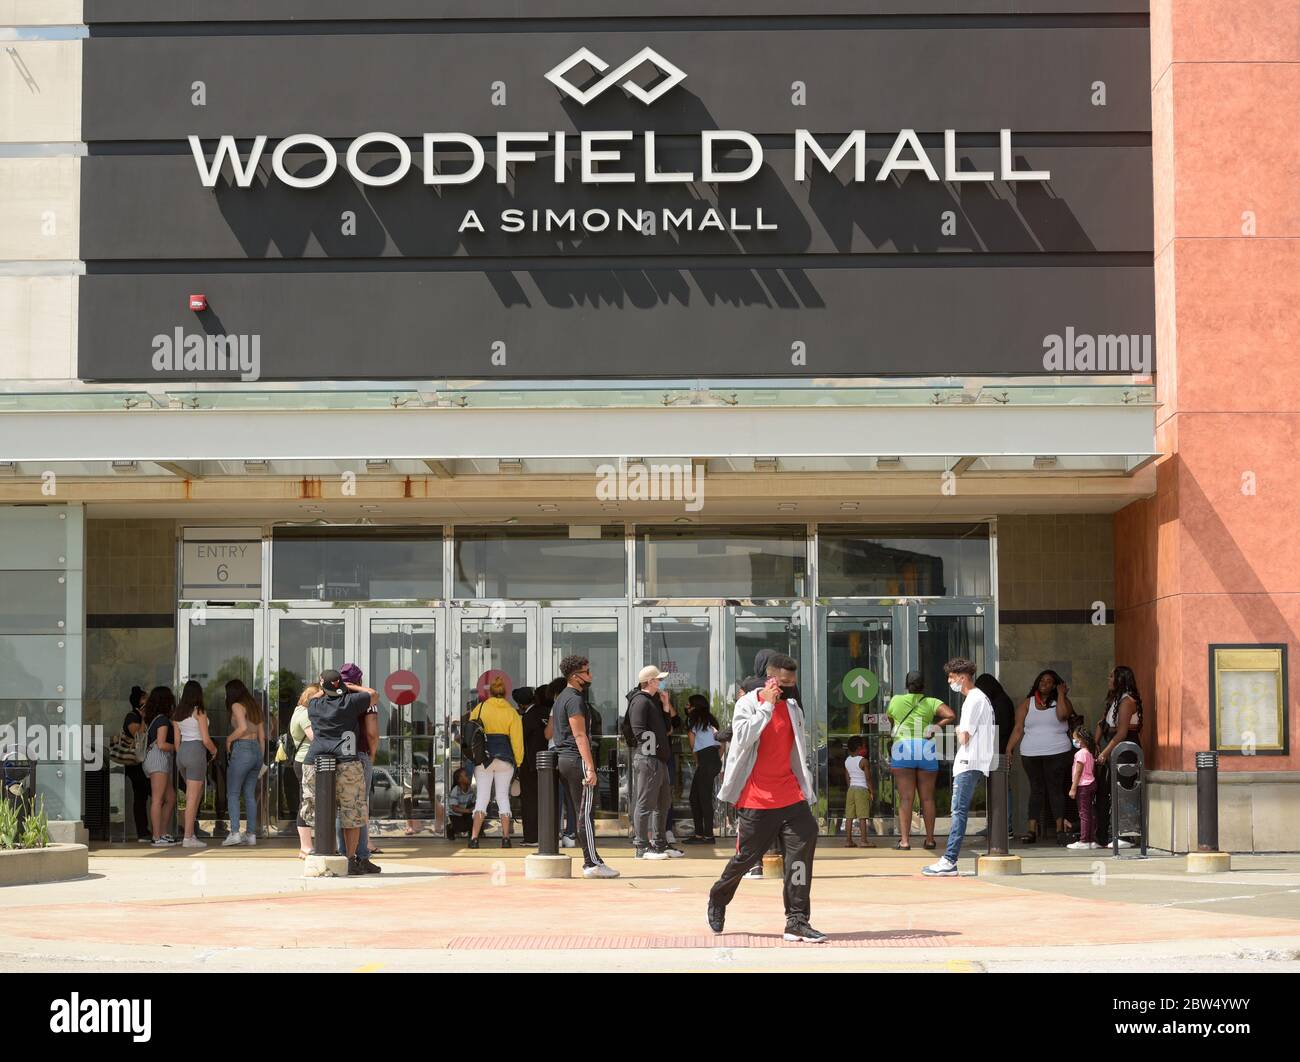 Woodfield Mall in Schaumburg, Illinois, United States